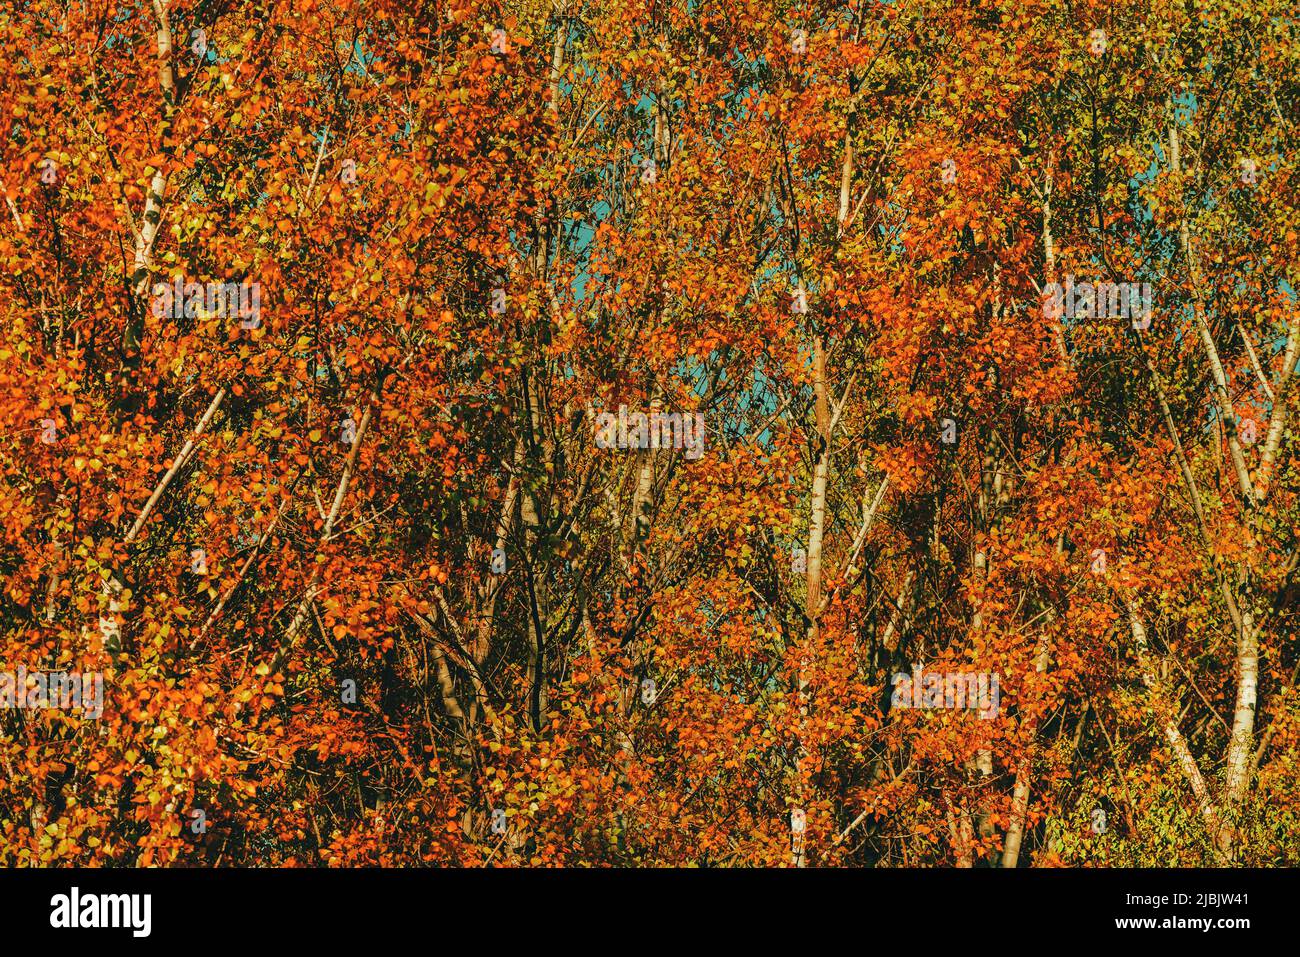 Saison d'automne et beauté dans la nature, beau paysage de forêt de peupliers en octobre, feuilles d'orange sur les grands arbres Banque D'Images